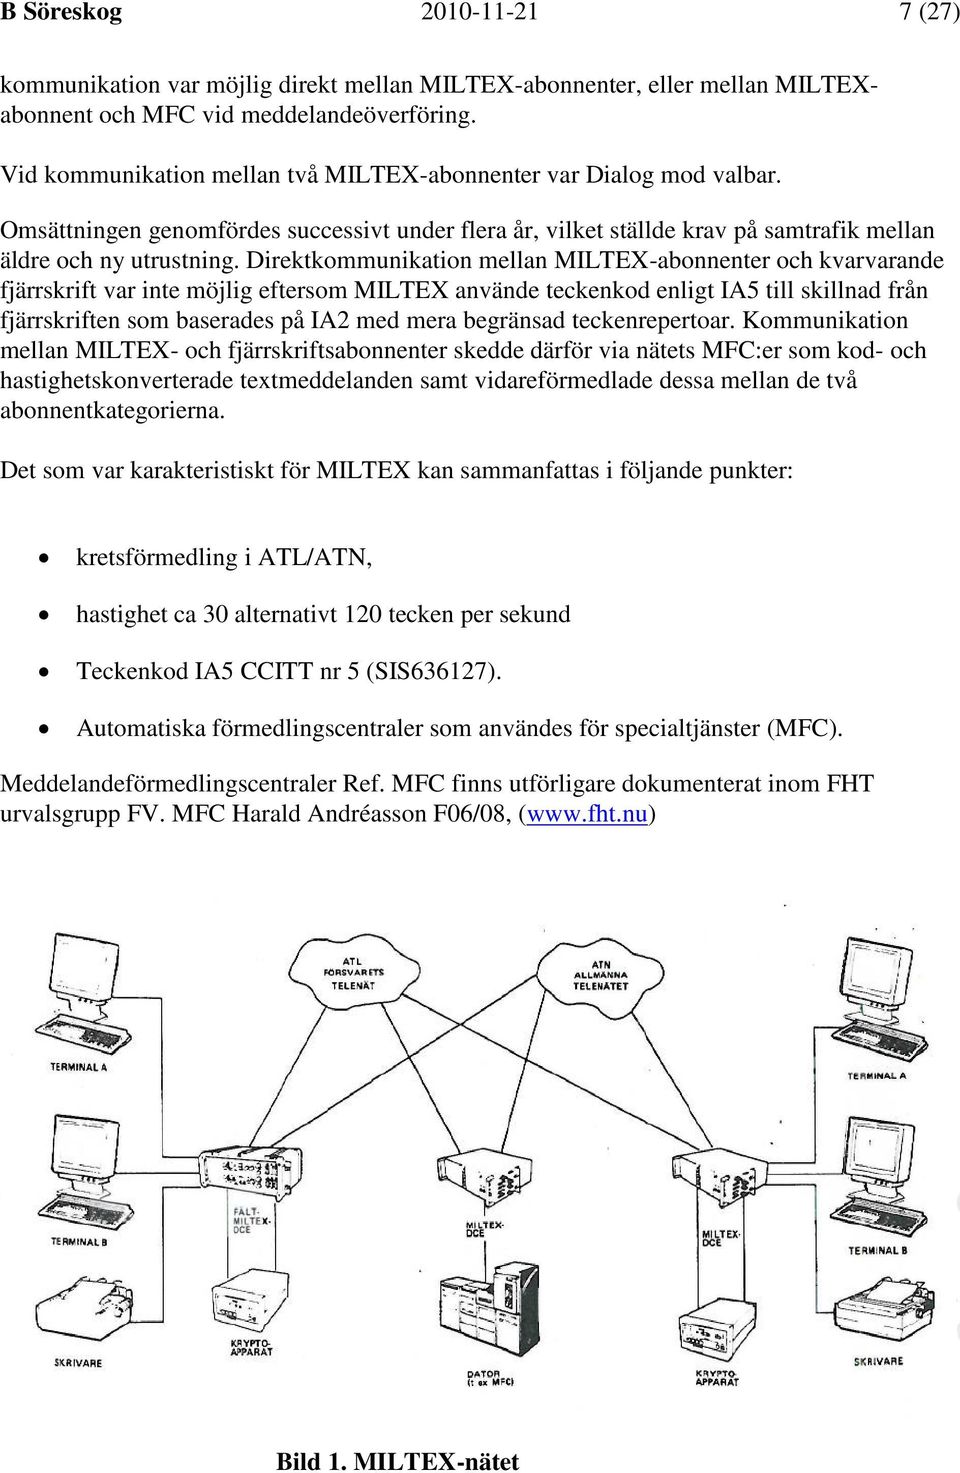 Direktkommunikation mellan MILTEX-abonnenter och kvarvarande fjärrskrift var inte möjlig eftersom MILTEX använde teckenkod enligt IA5 till skillnad från fjärrskriften som baserades på IA2 med mera